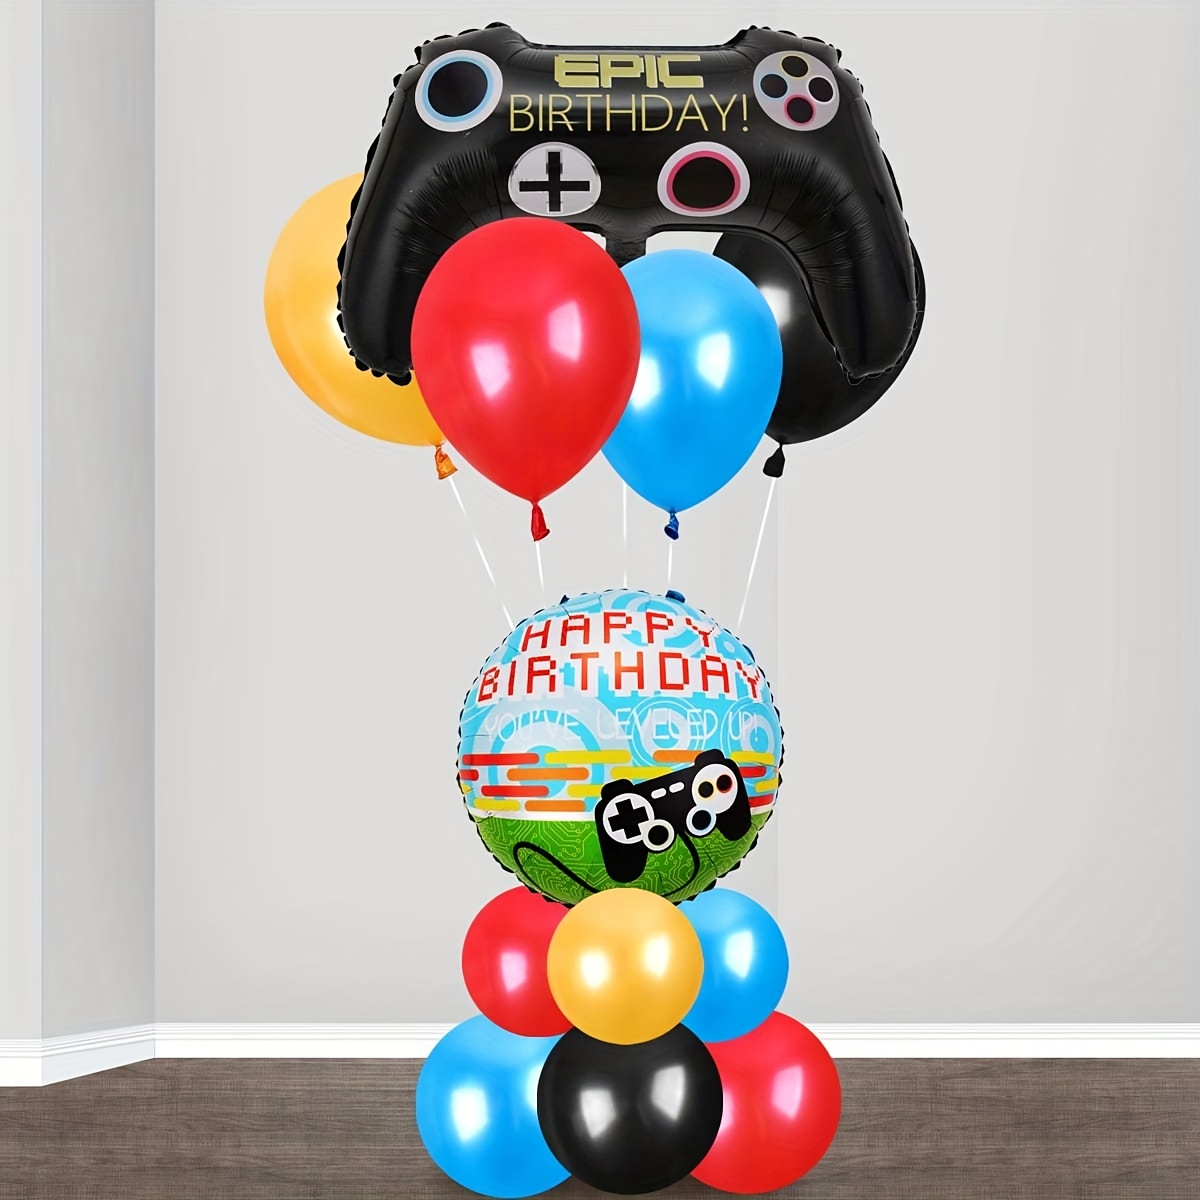 Ballon manette de jeu vidéo pour anniversaire enfant